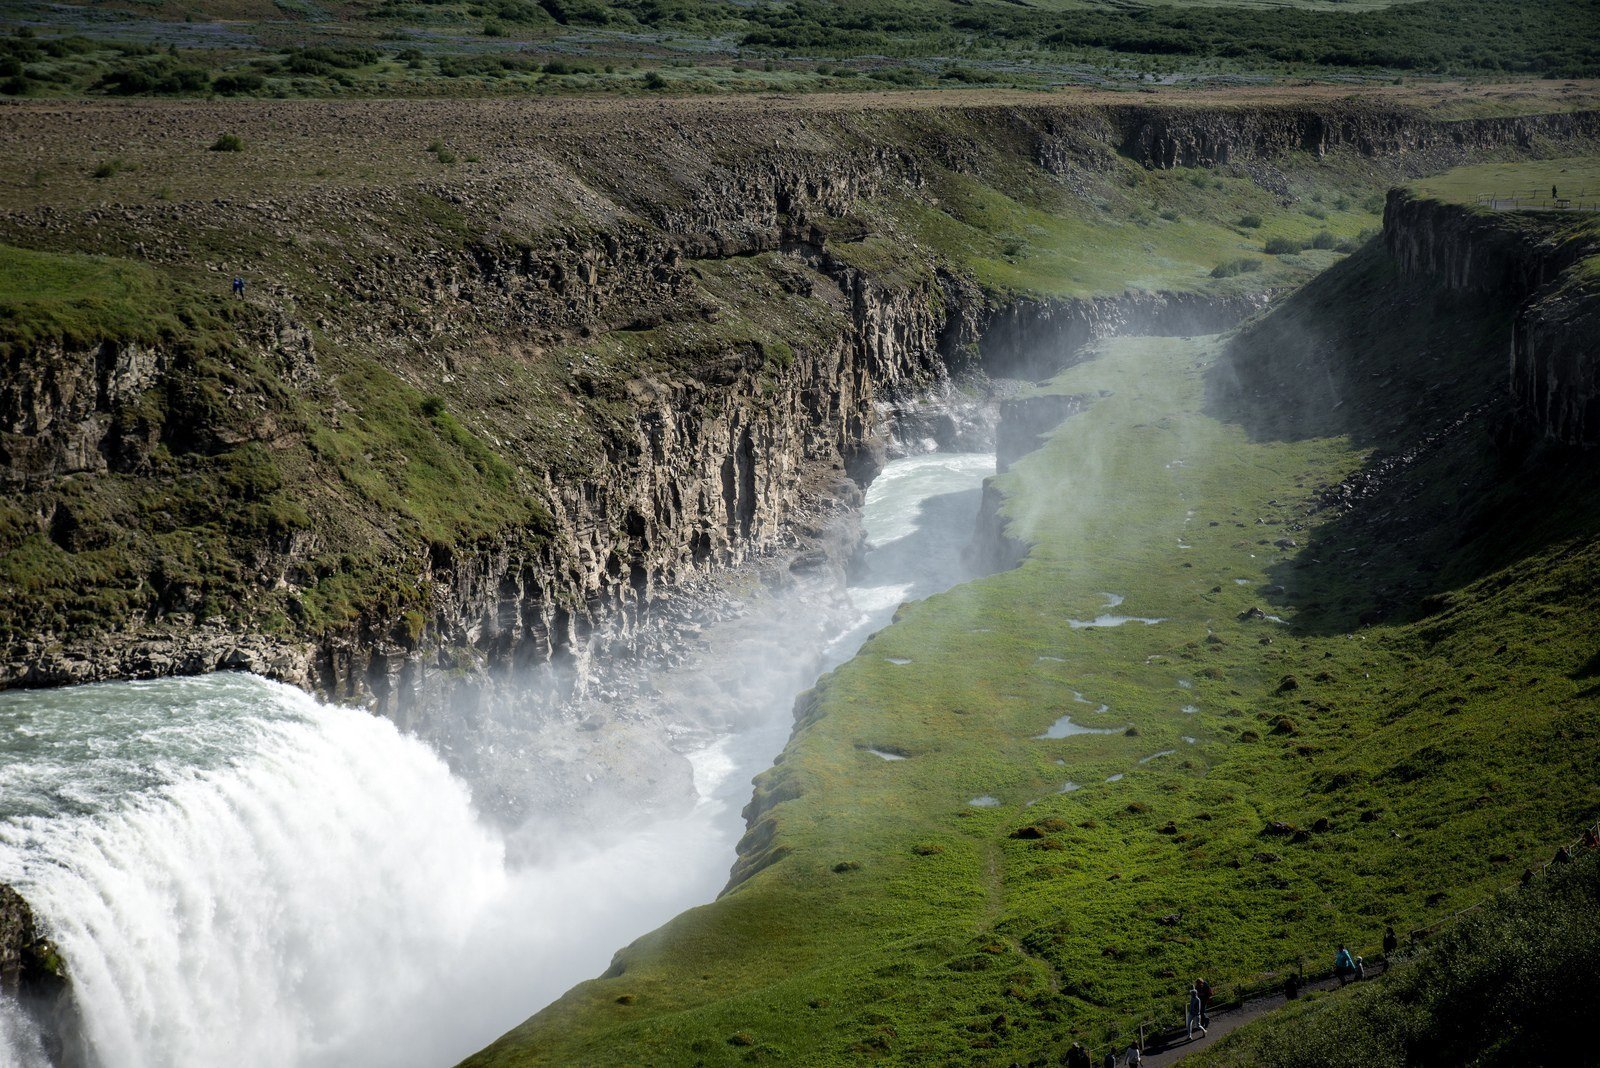  Chute  d eau  en Islande  Islande  en Islande 